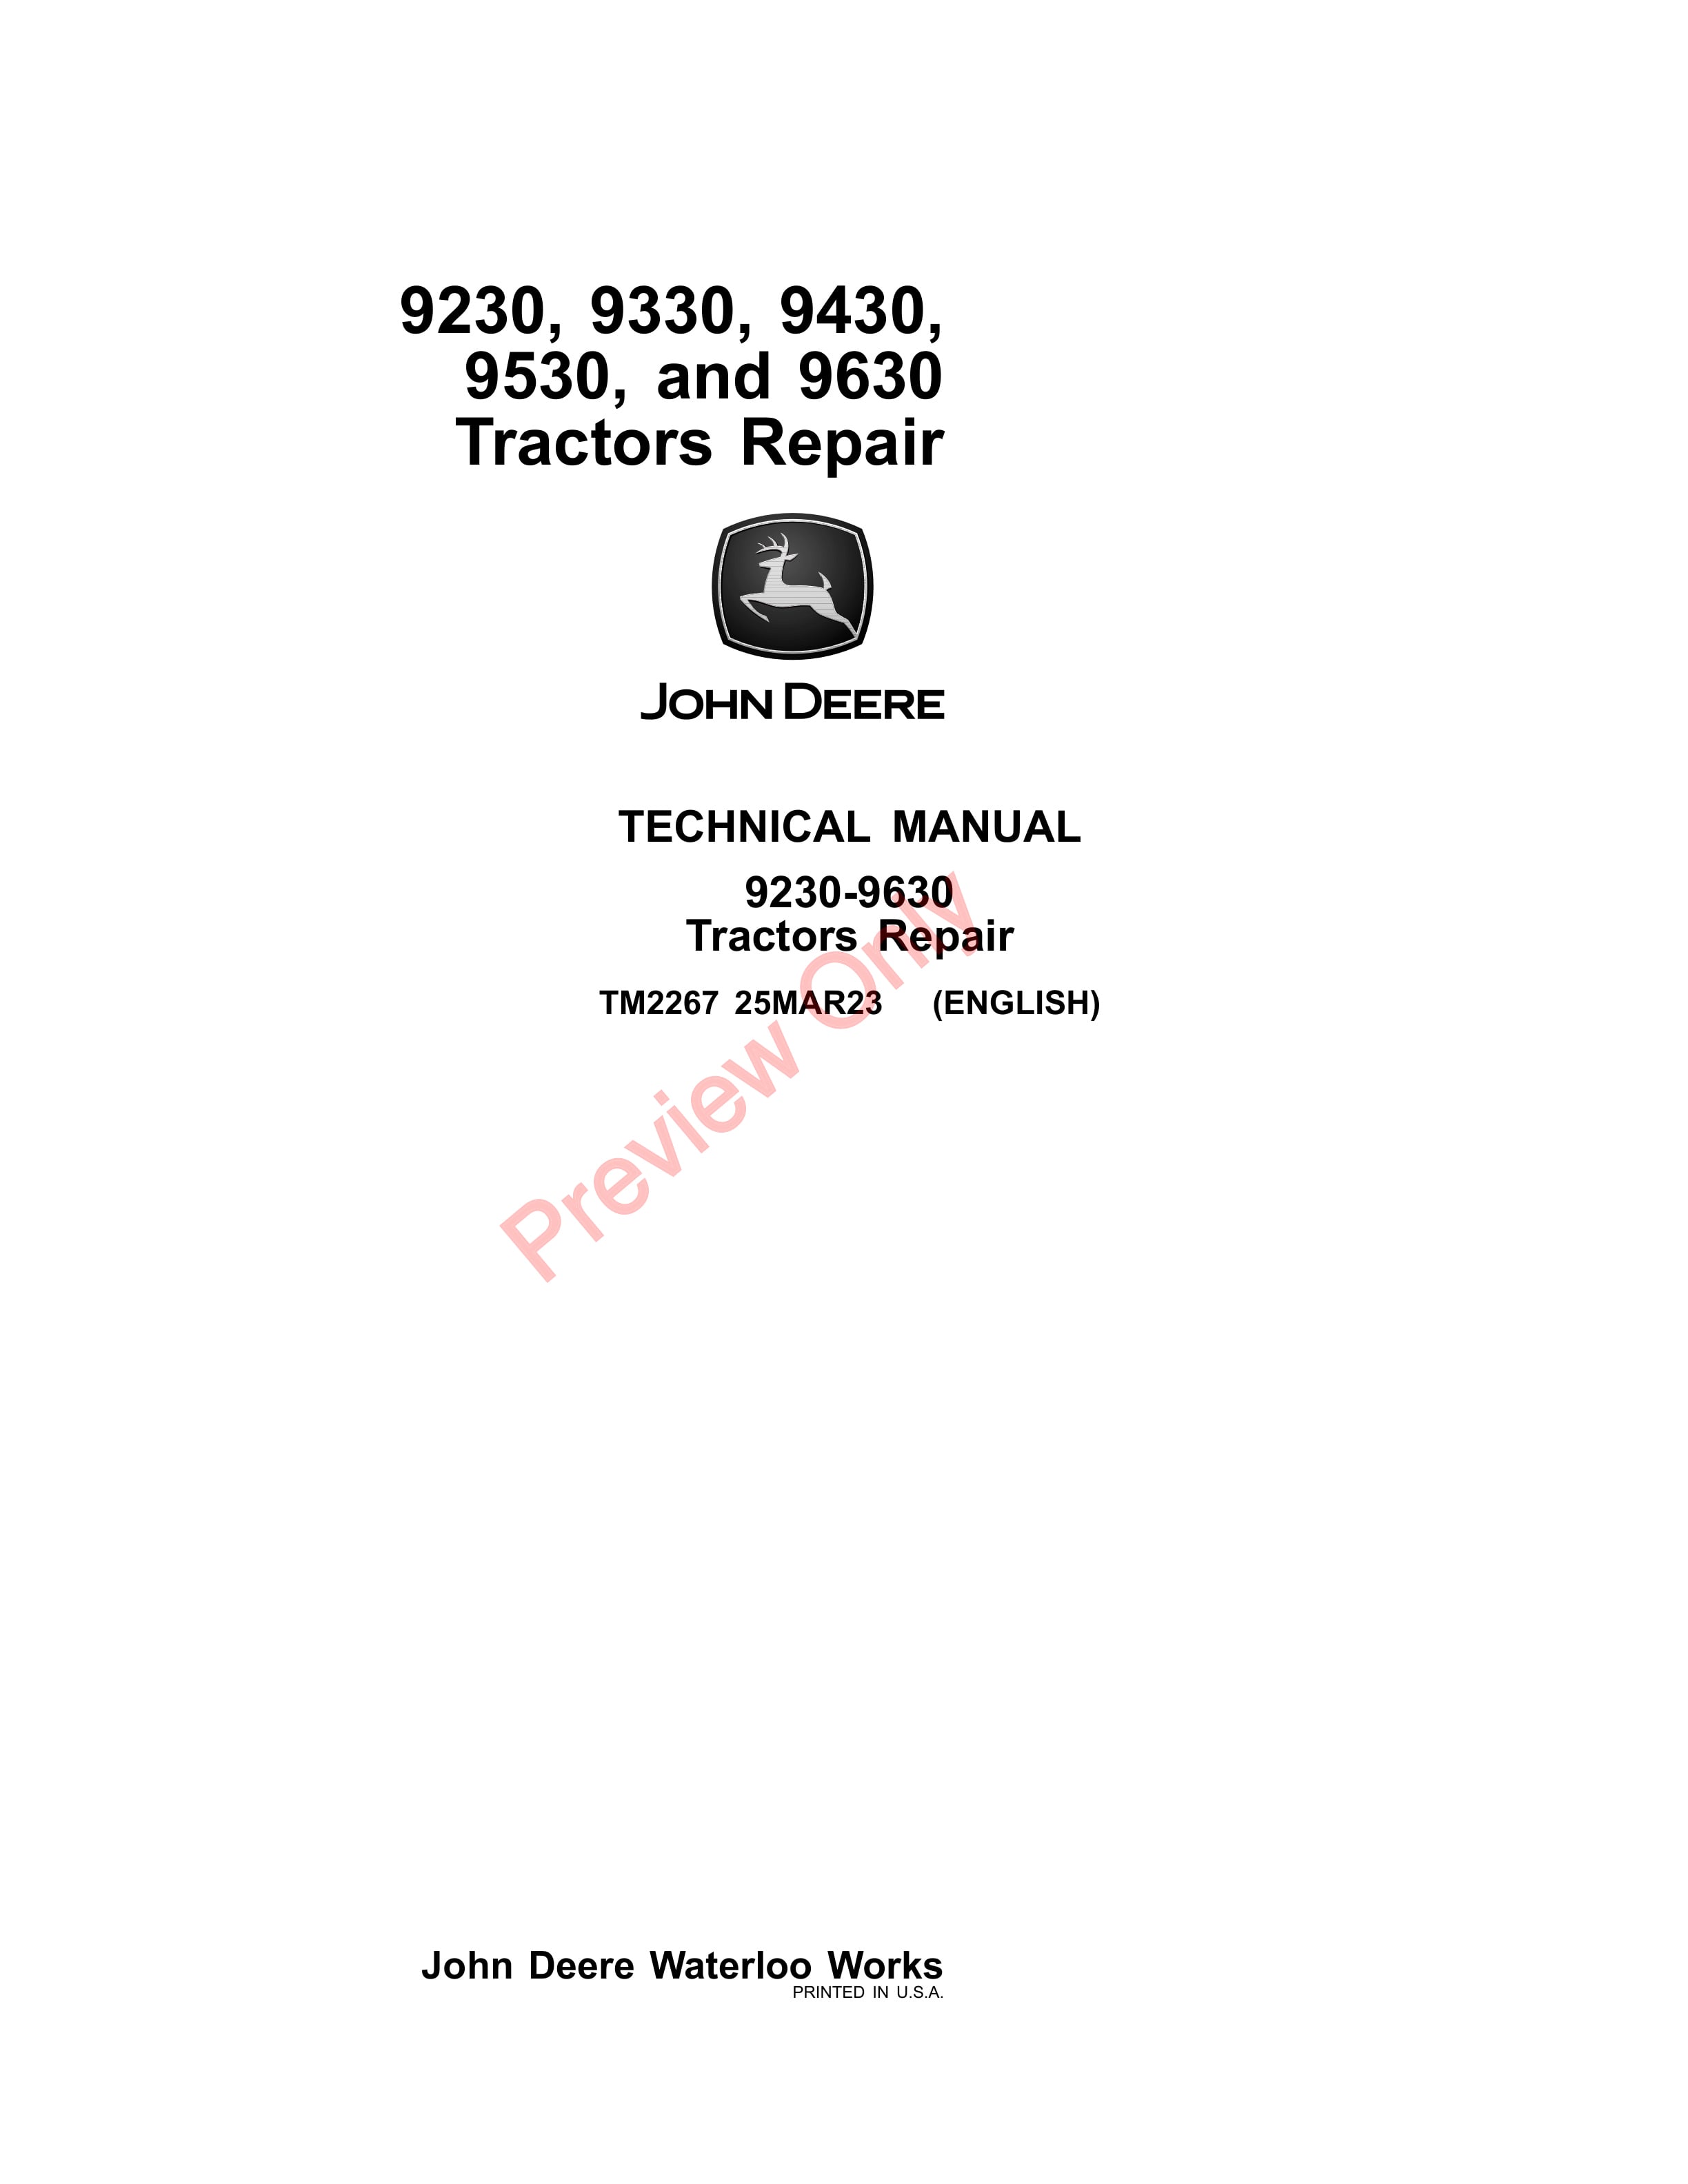 John Deere 9230, 9330, 9430, 9530 and 9630 Tractors Technical Manual TM2267 25MAR23-1